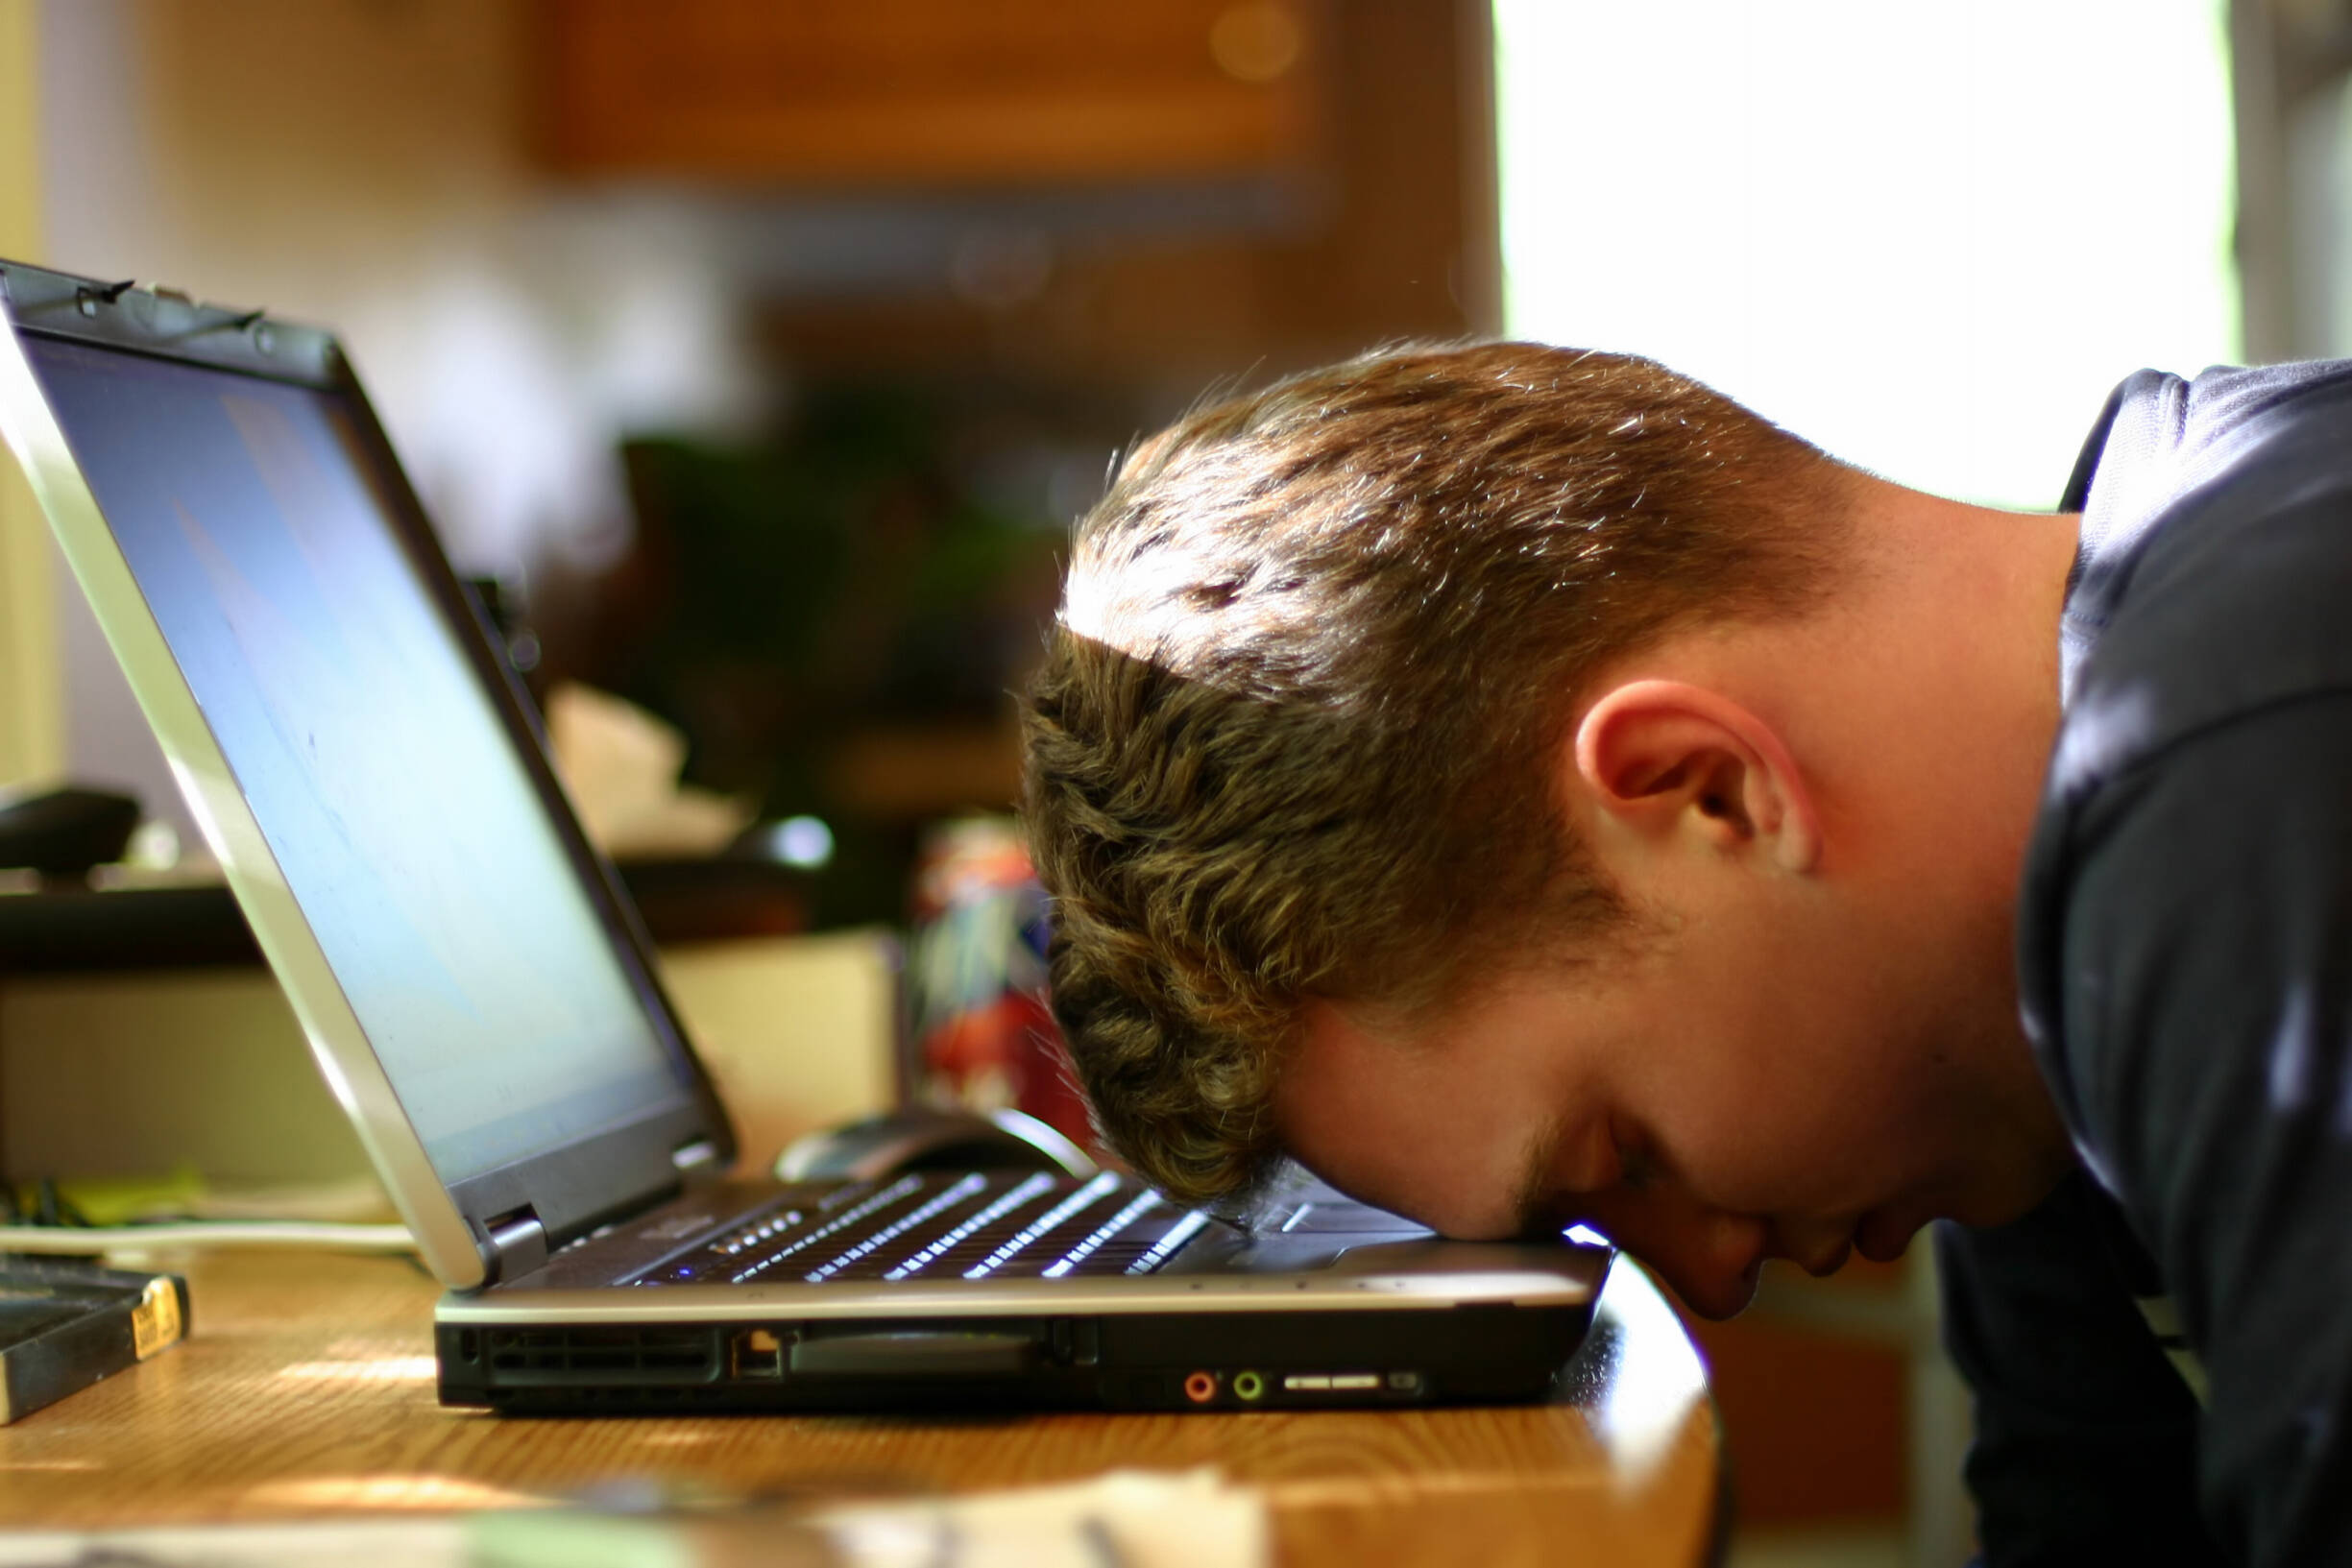 Mann schlägt Kopf auf Laptop